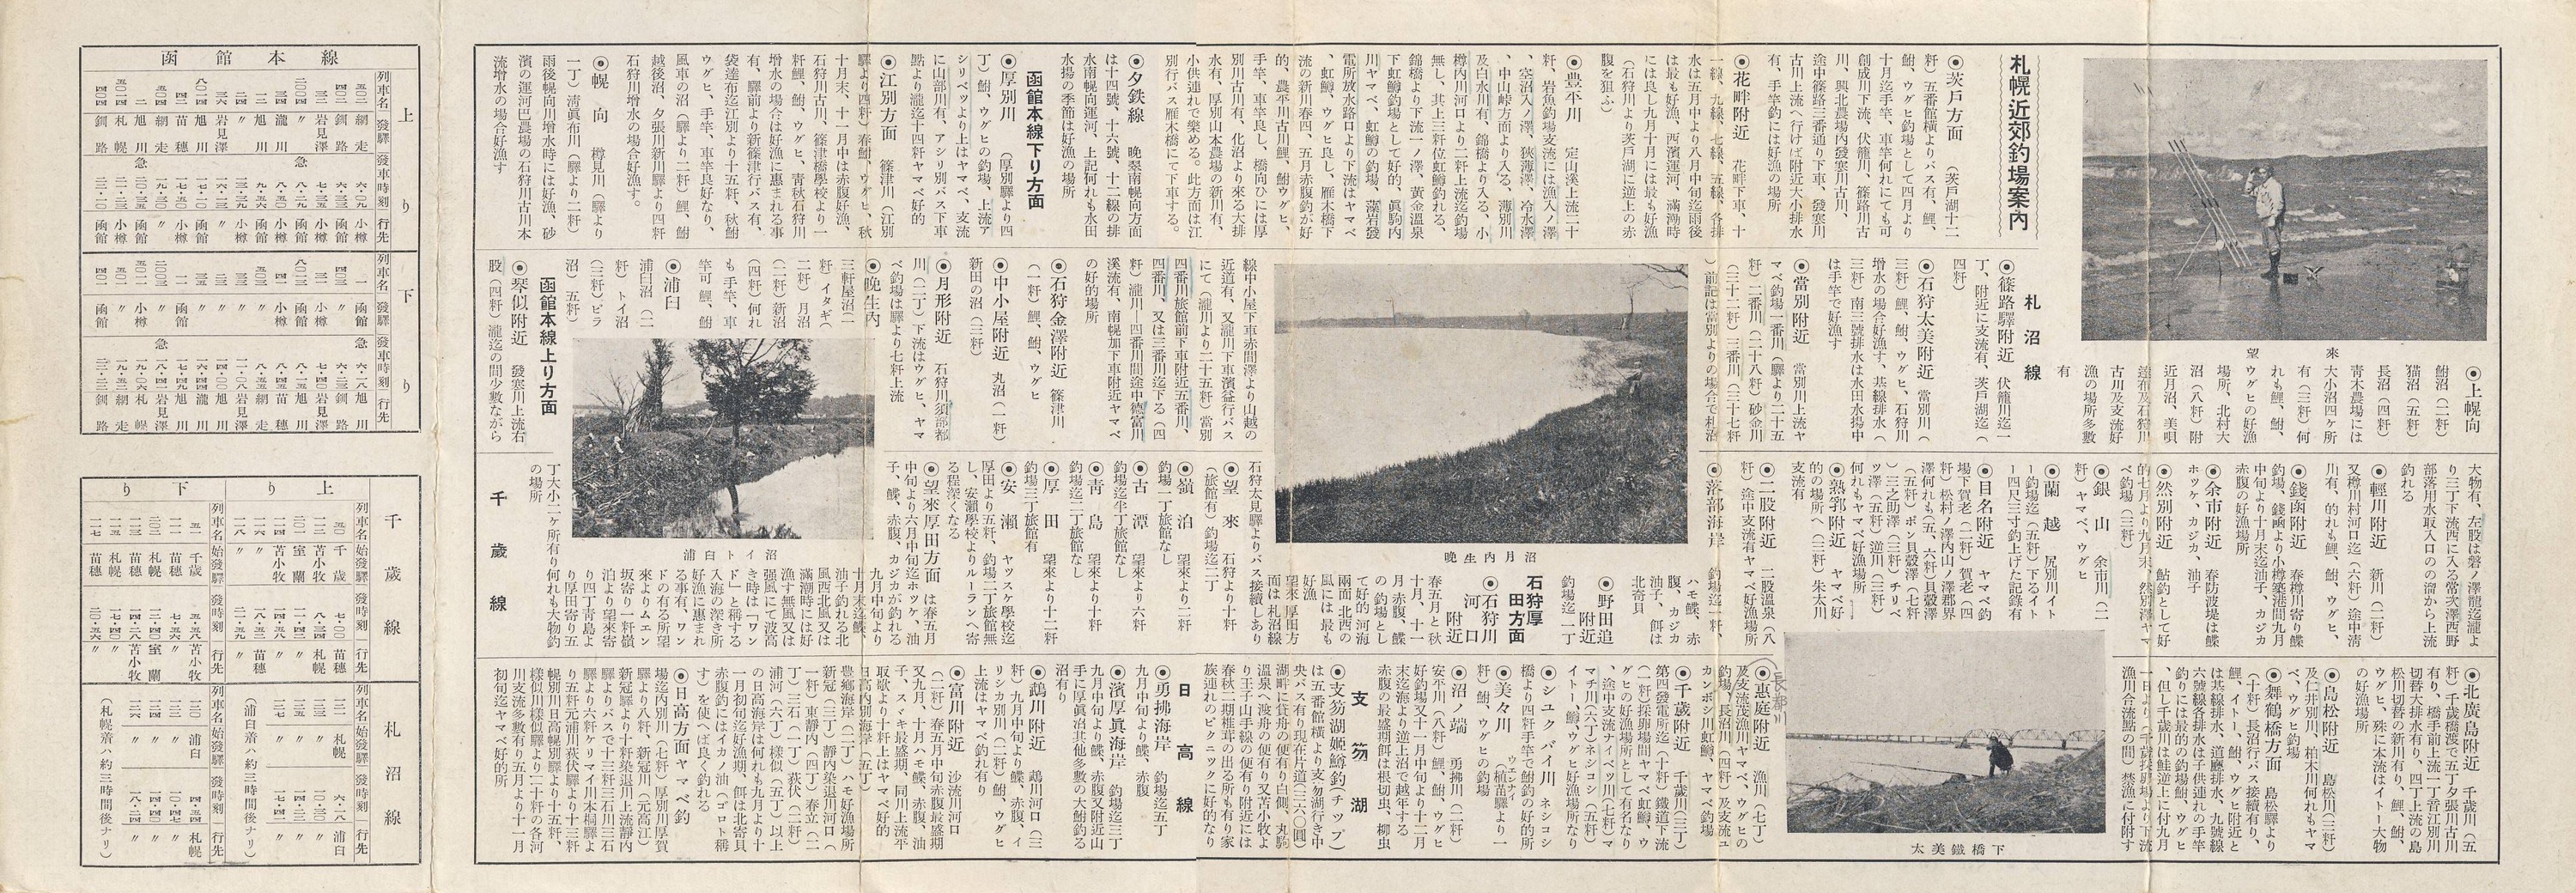 1949-09(頃)_経済輿論新聞社_札幌近郊釣場案内裏面